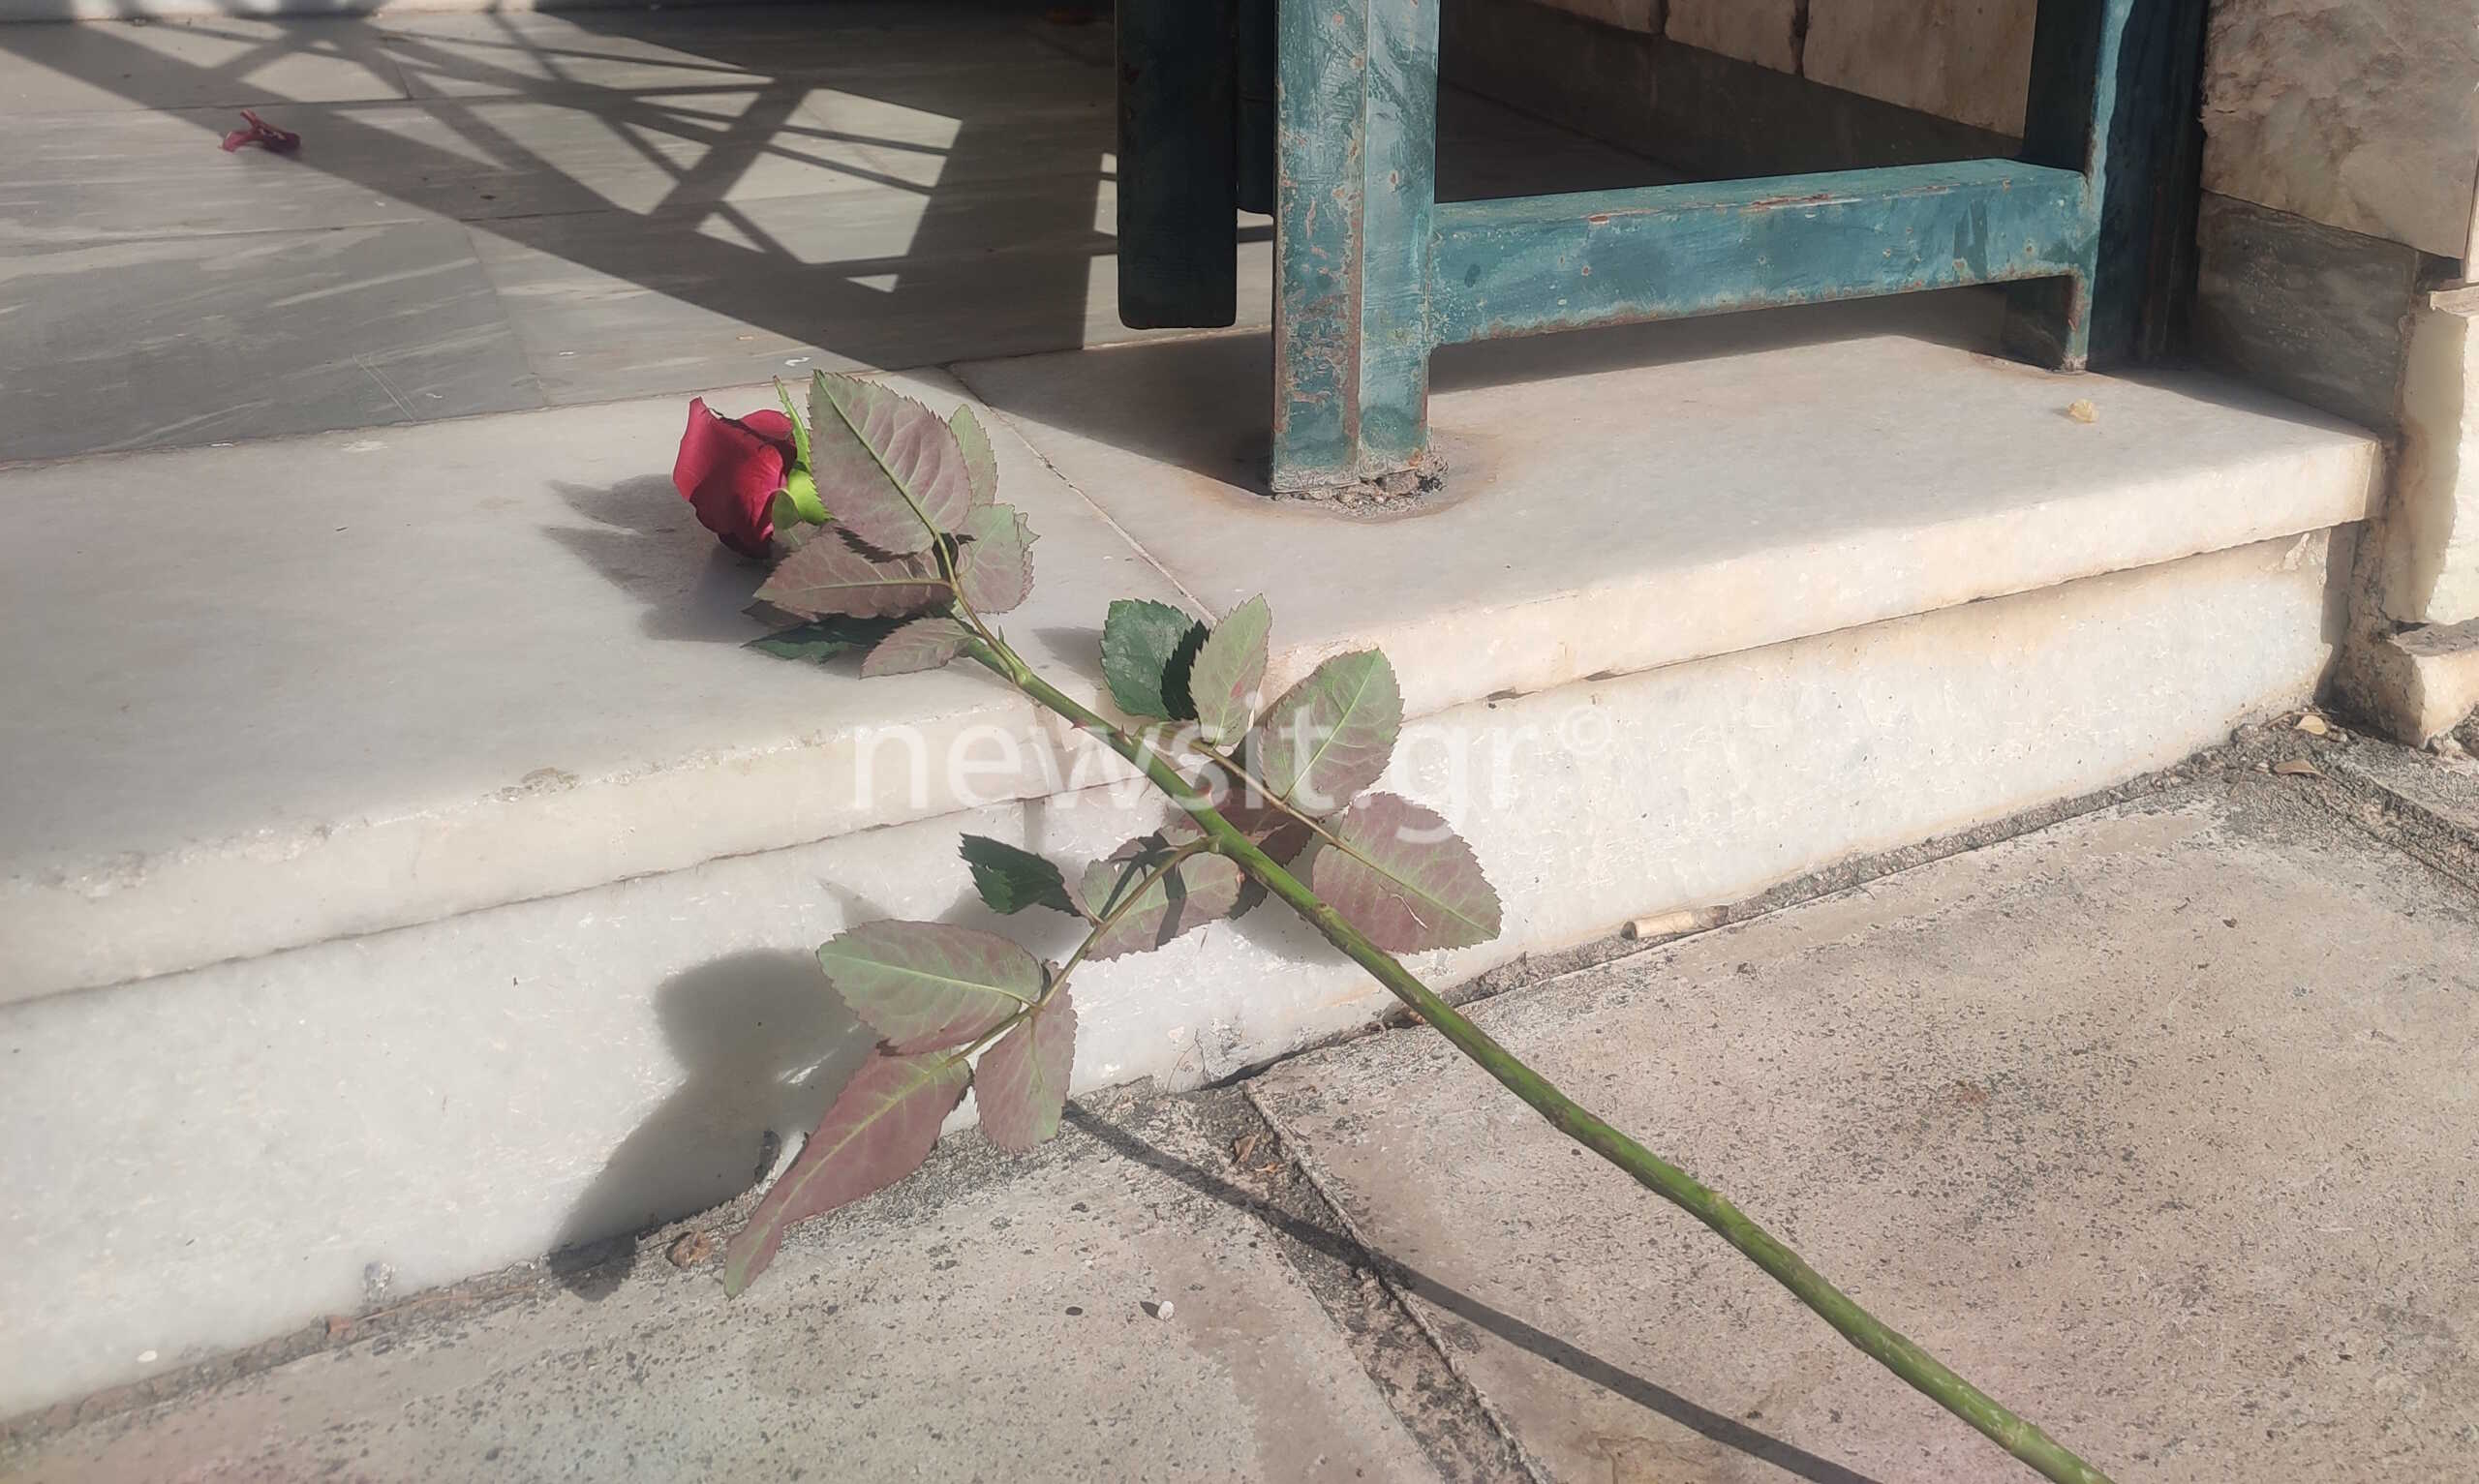 Νέα Σμύρνη: Ένα κόκκινο τριαντάφυλλο στην είσοδο της πολυκατοικίας για τον άτυχο 16χρονο – Συγκλονισμένη η γειτονιά